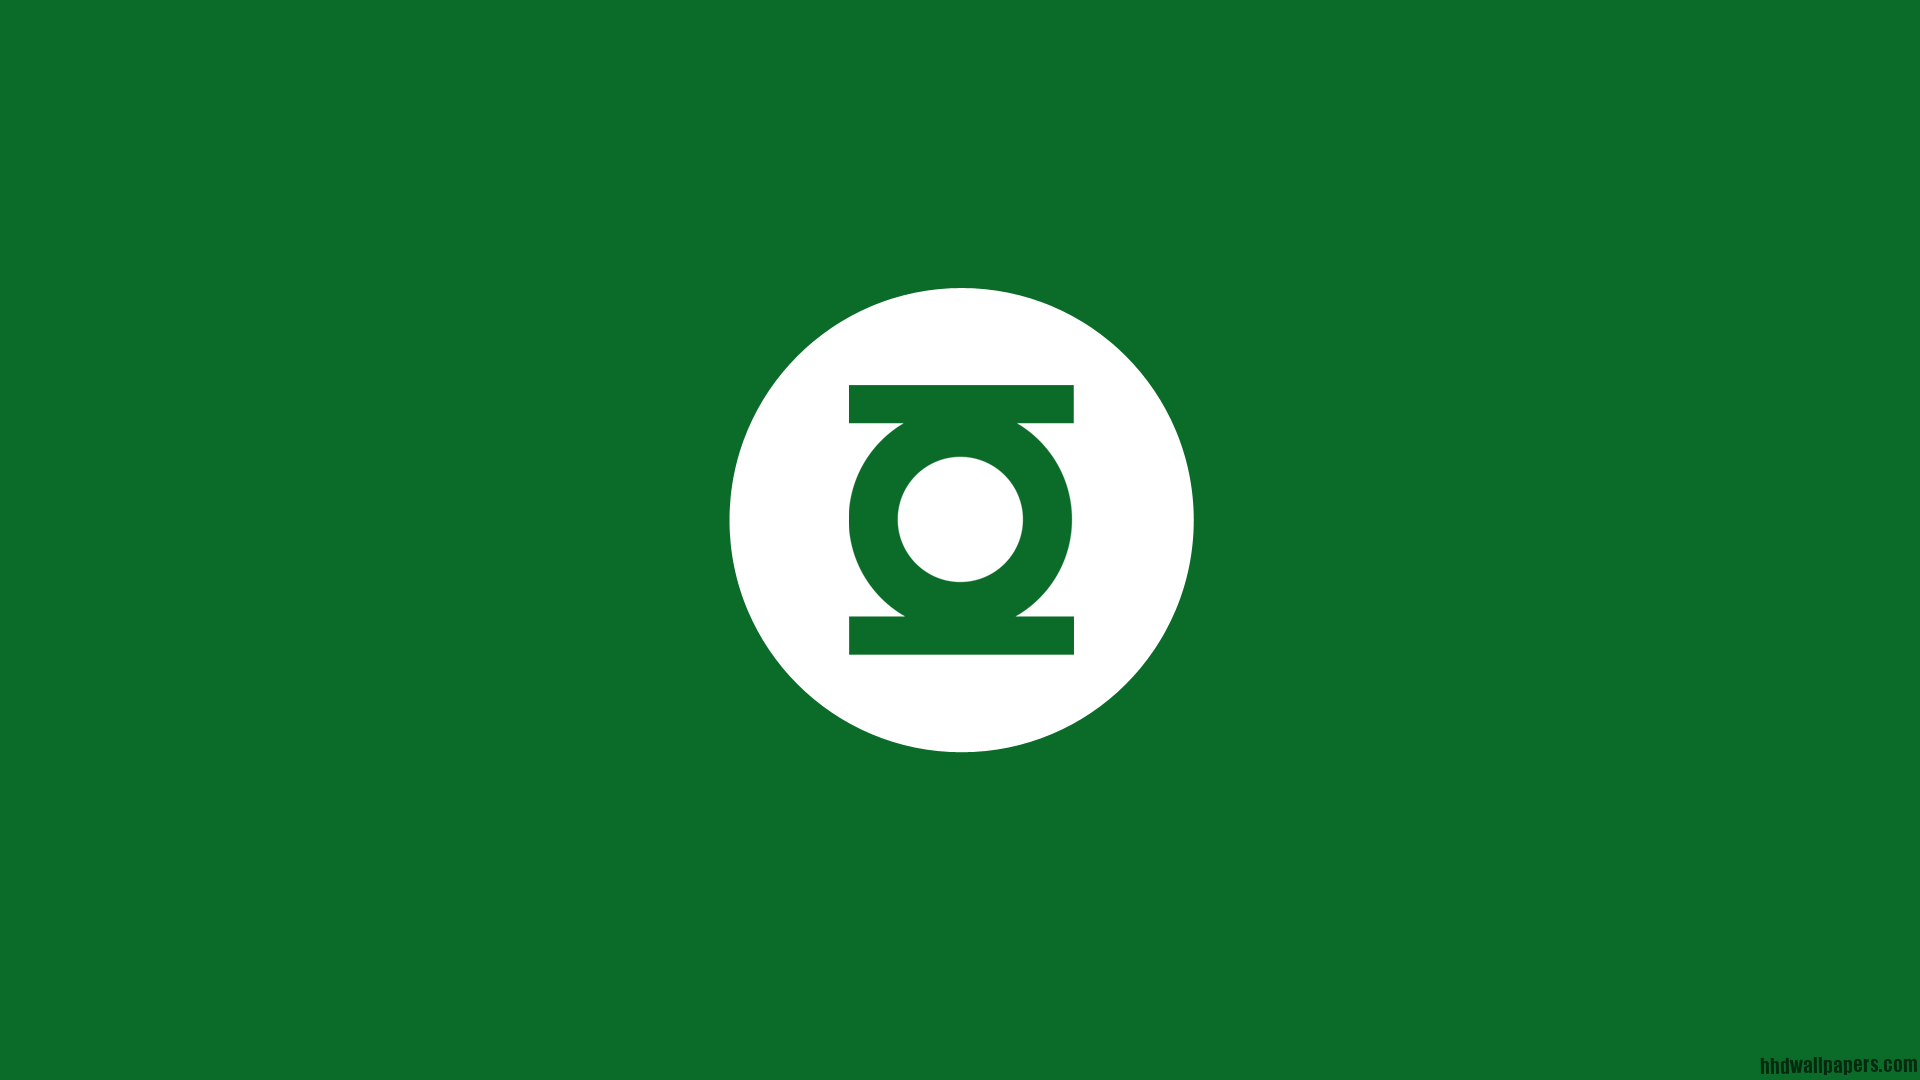 Green Lantern Symbol Wallpaper Free Green Lantern